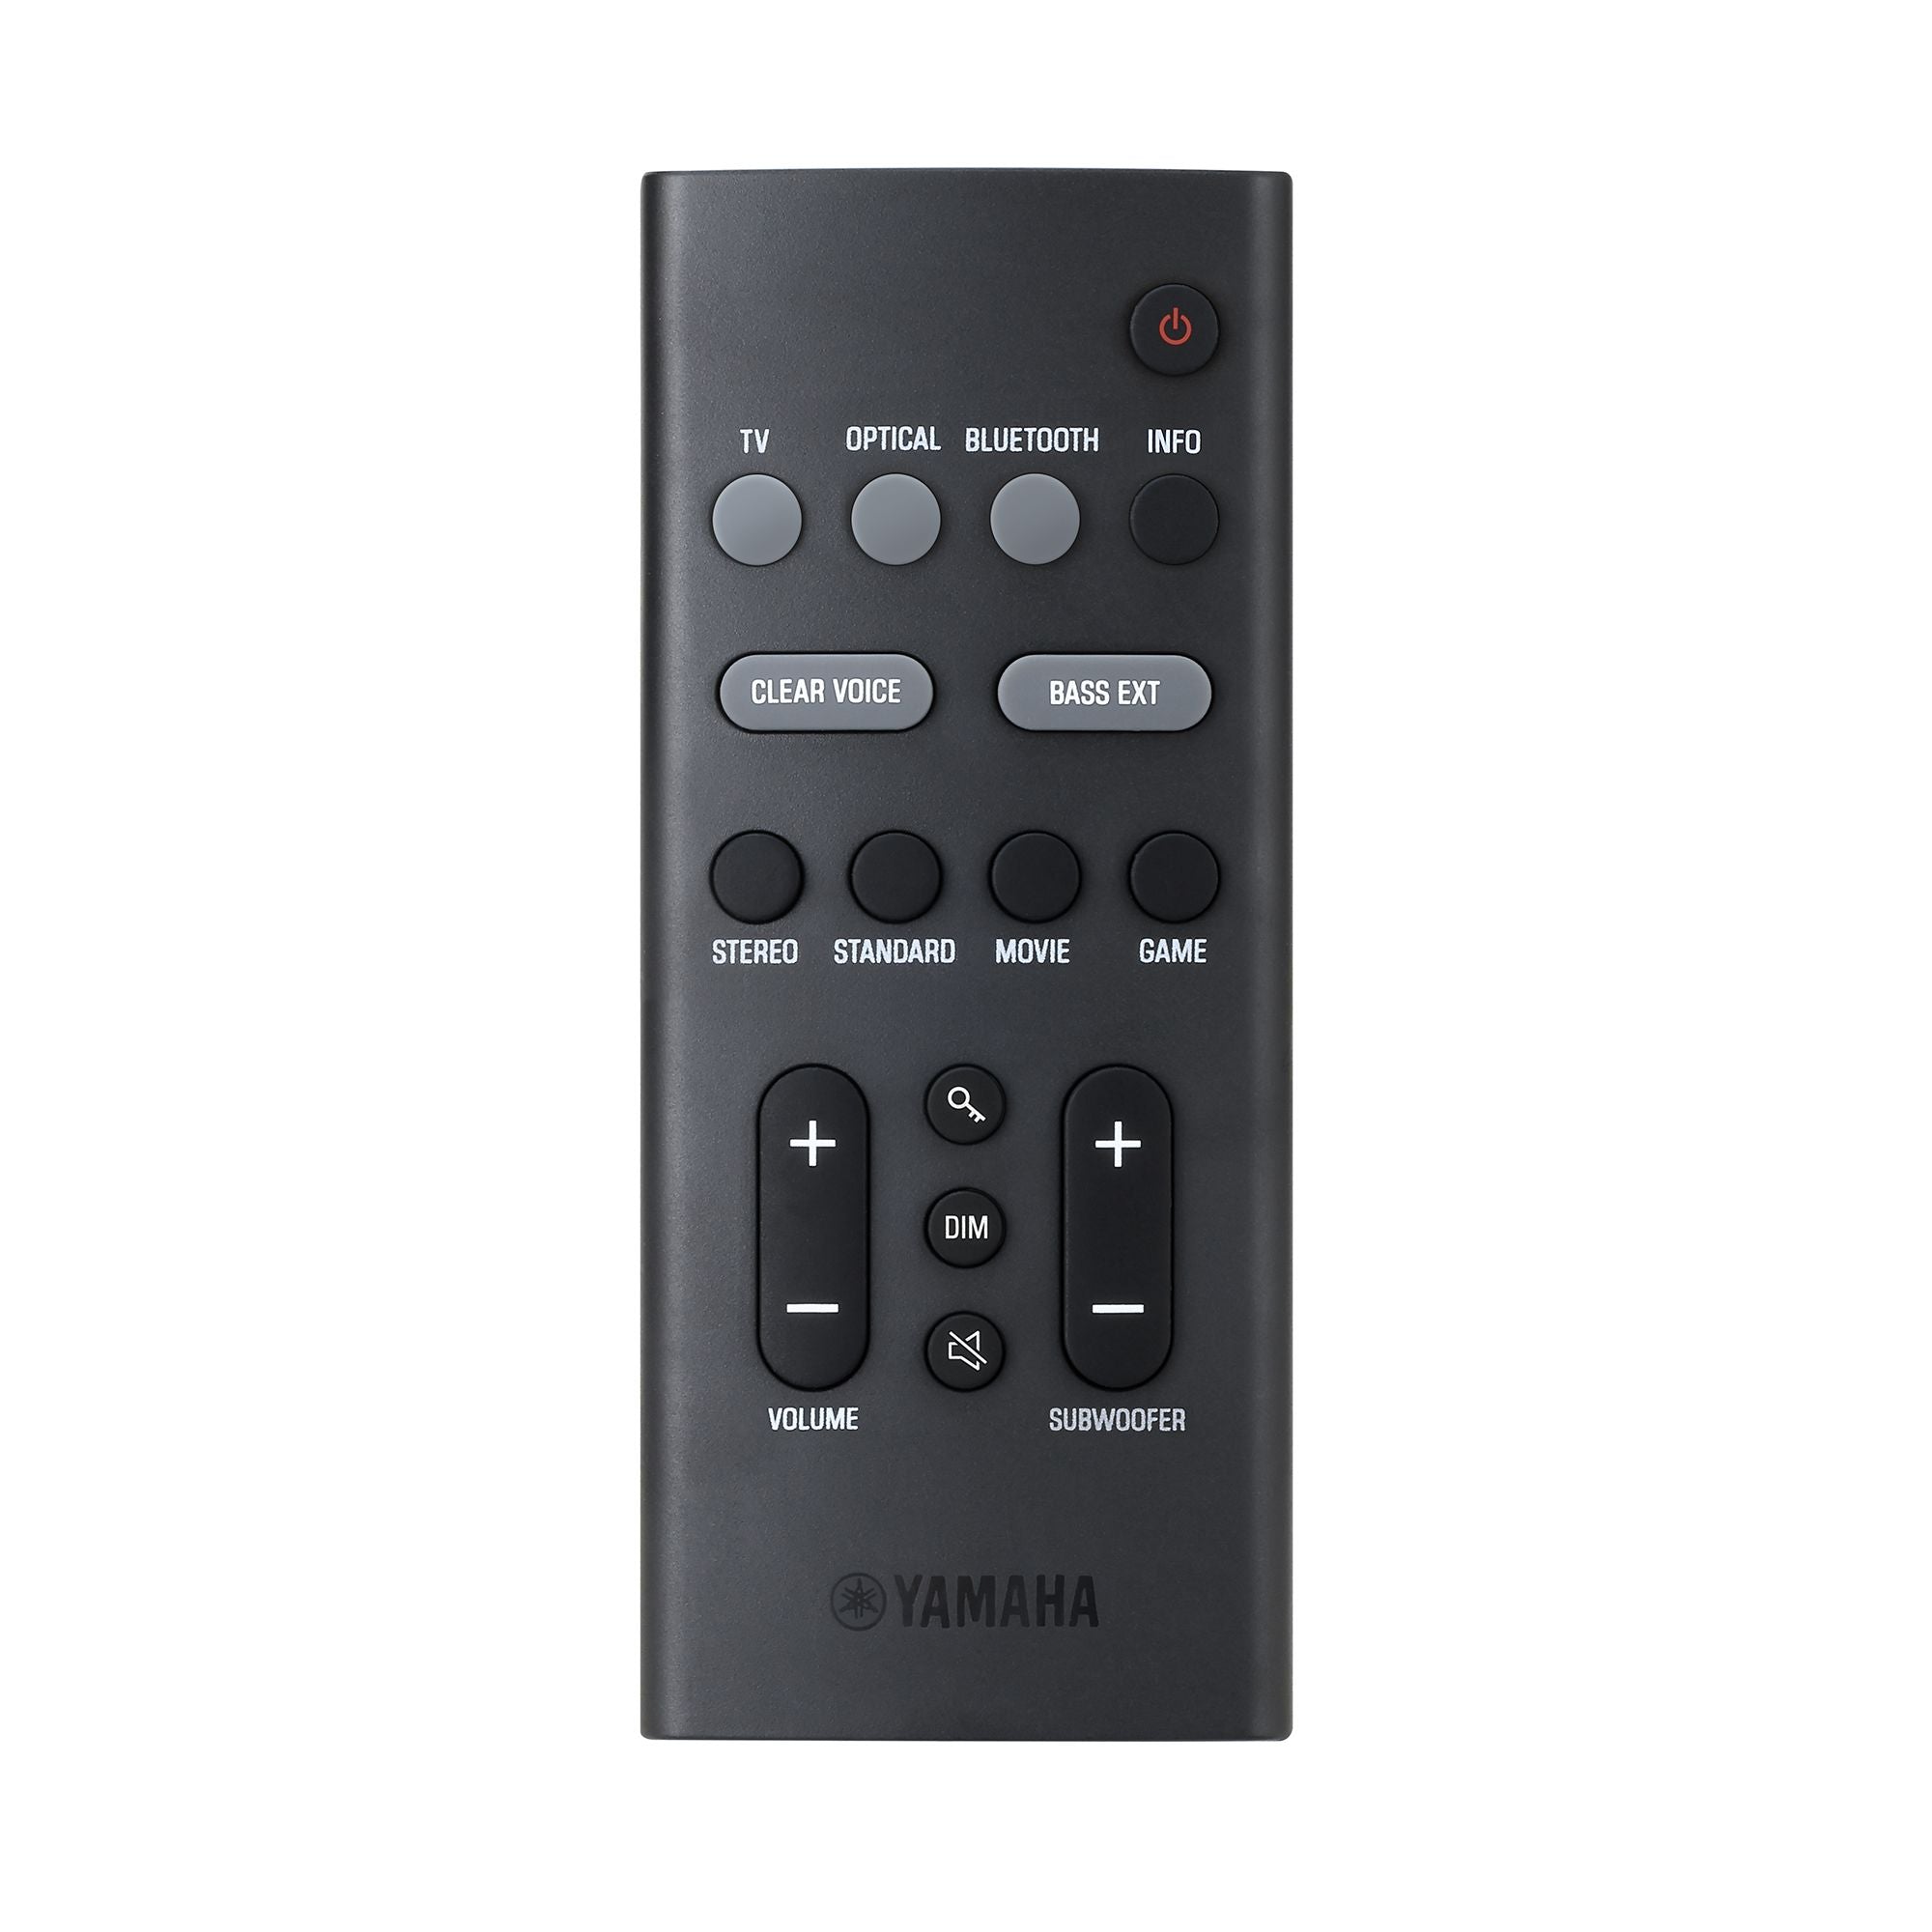 Yamaha SR-B30A Soundbar (全新上市)